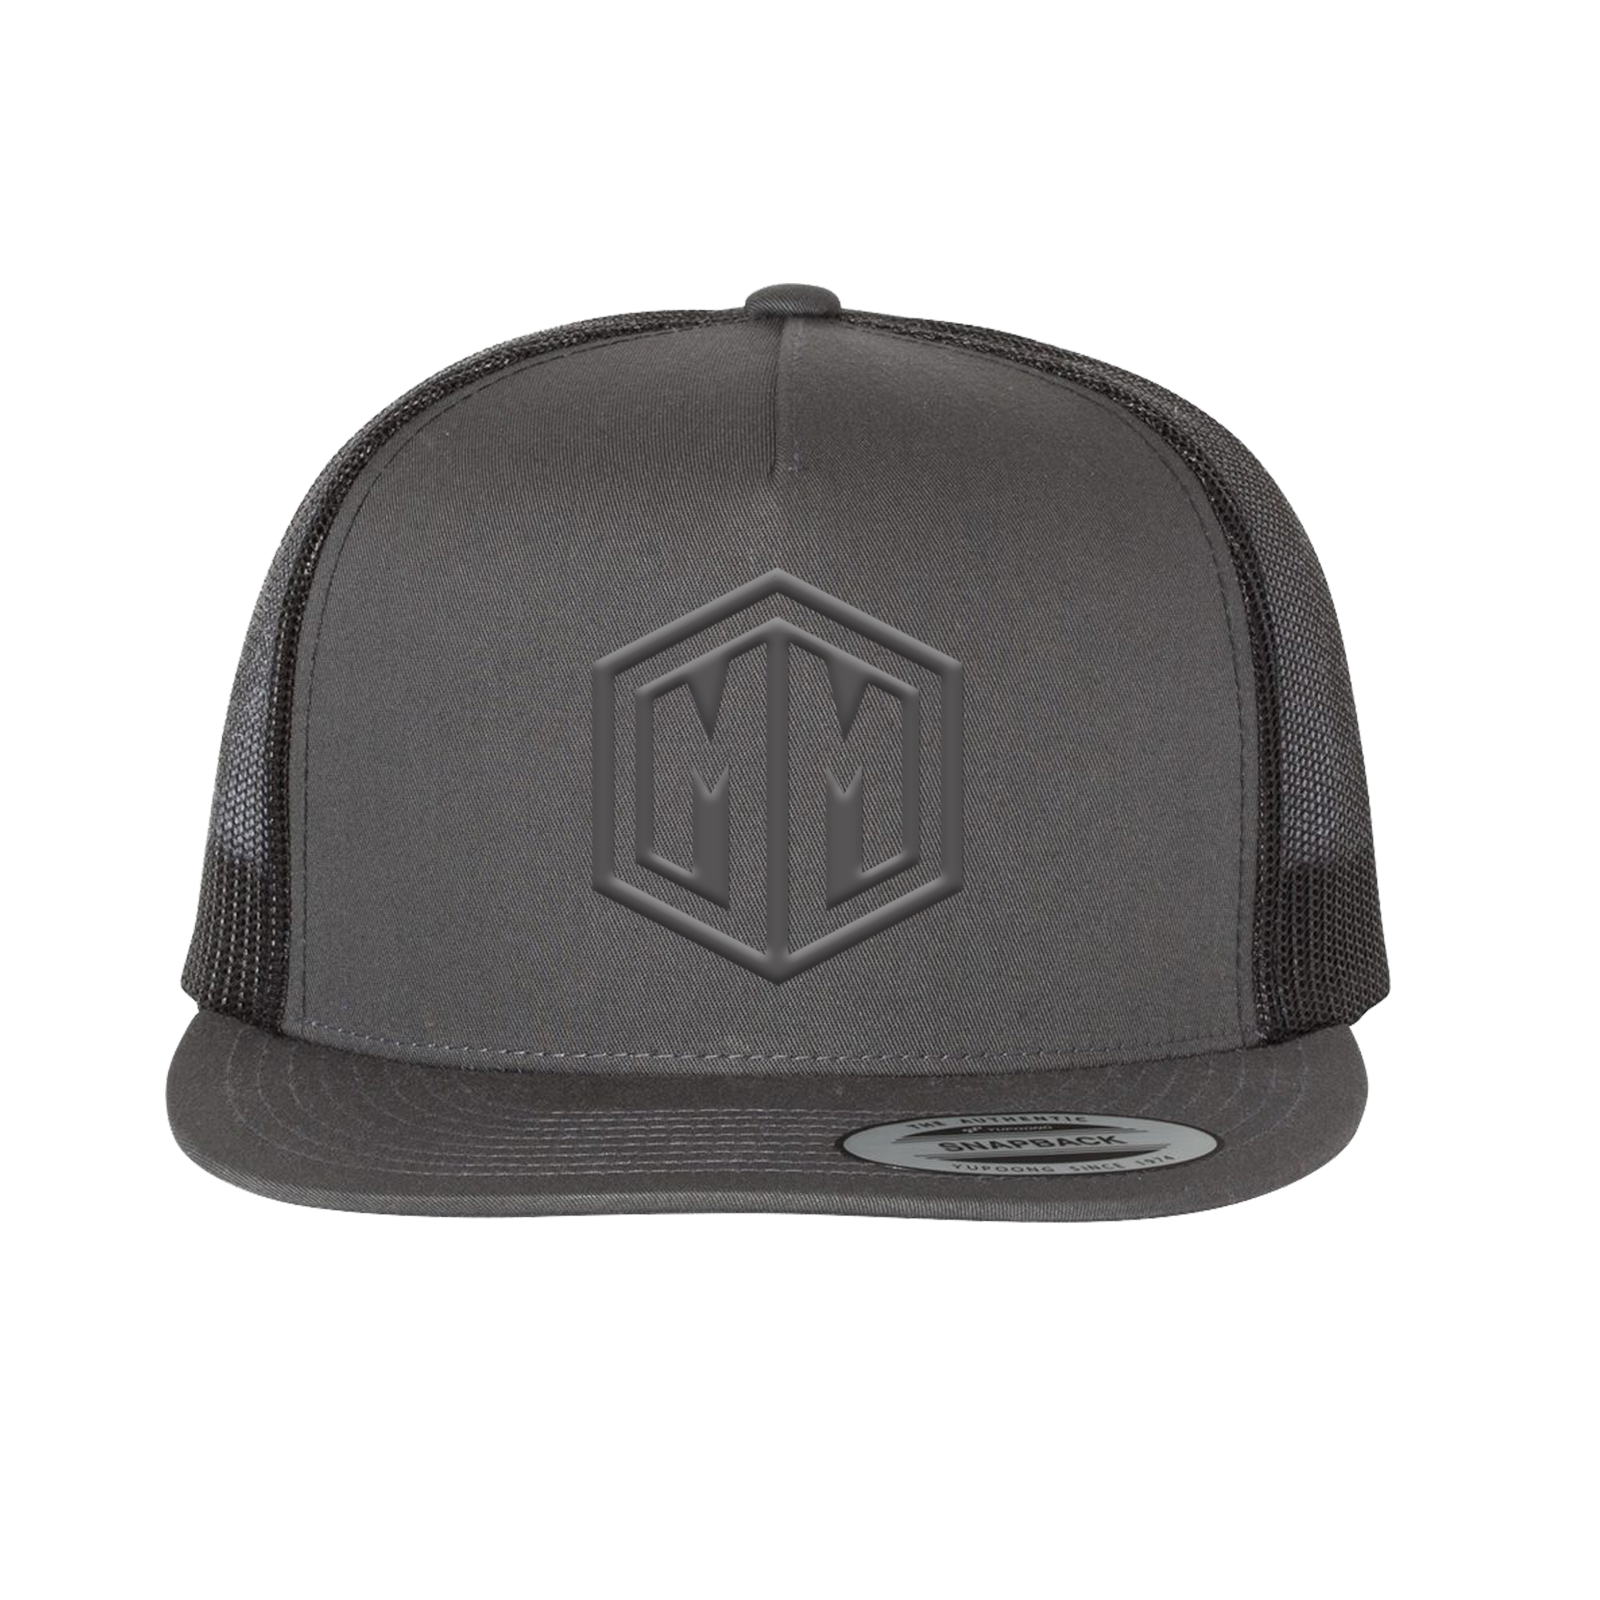 M+M Flatbill Trucker Hat Black